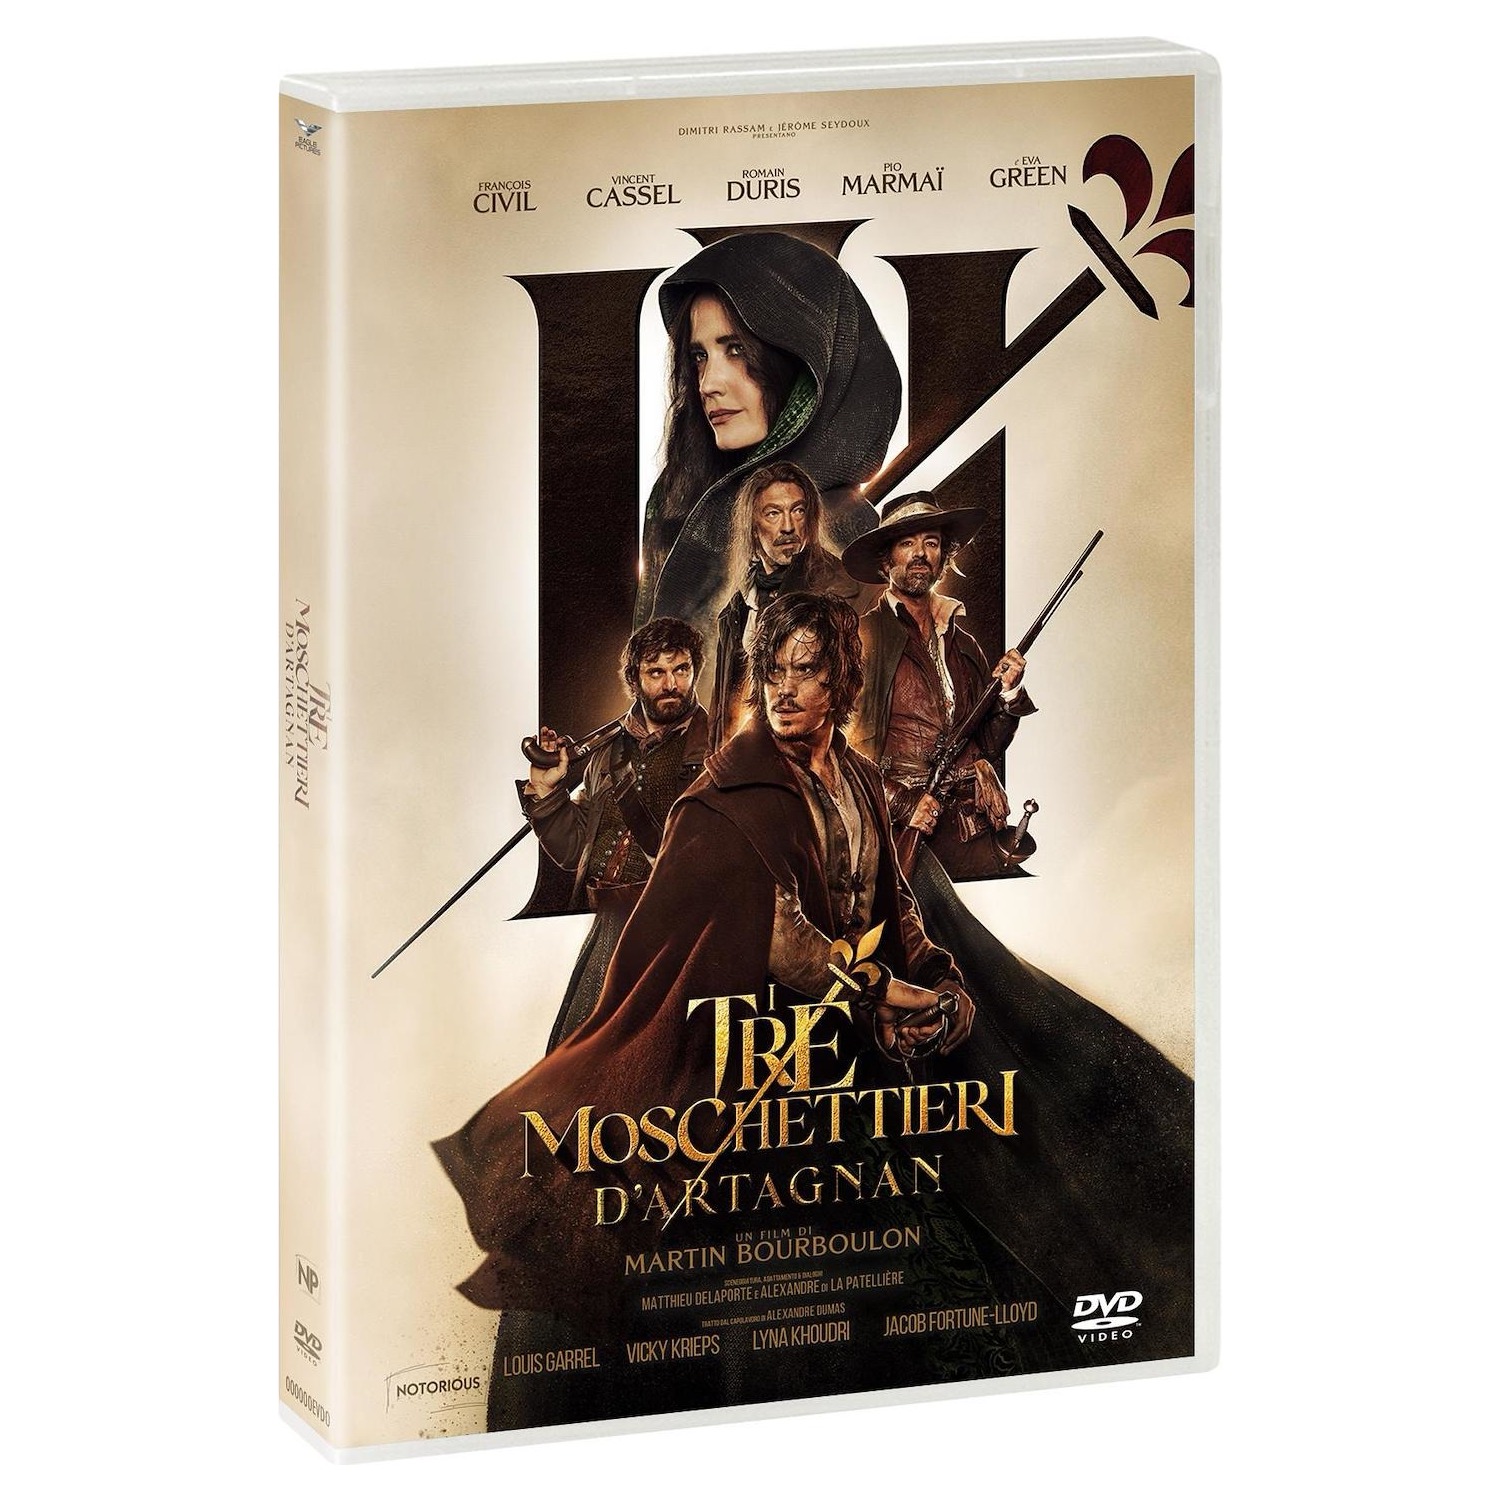 Immagine per DVD I Tre Moschettieri - D'Artagnan da DIMOStore